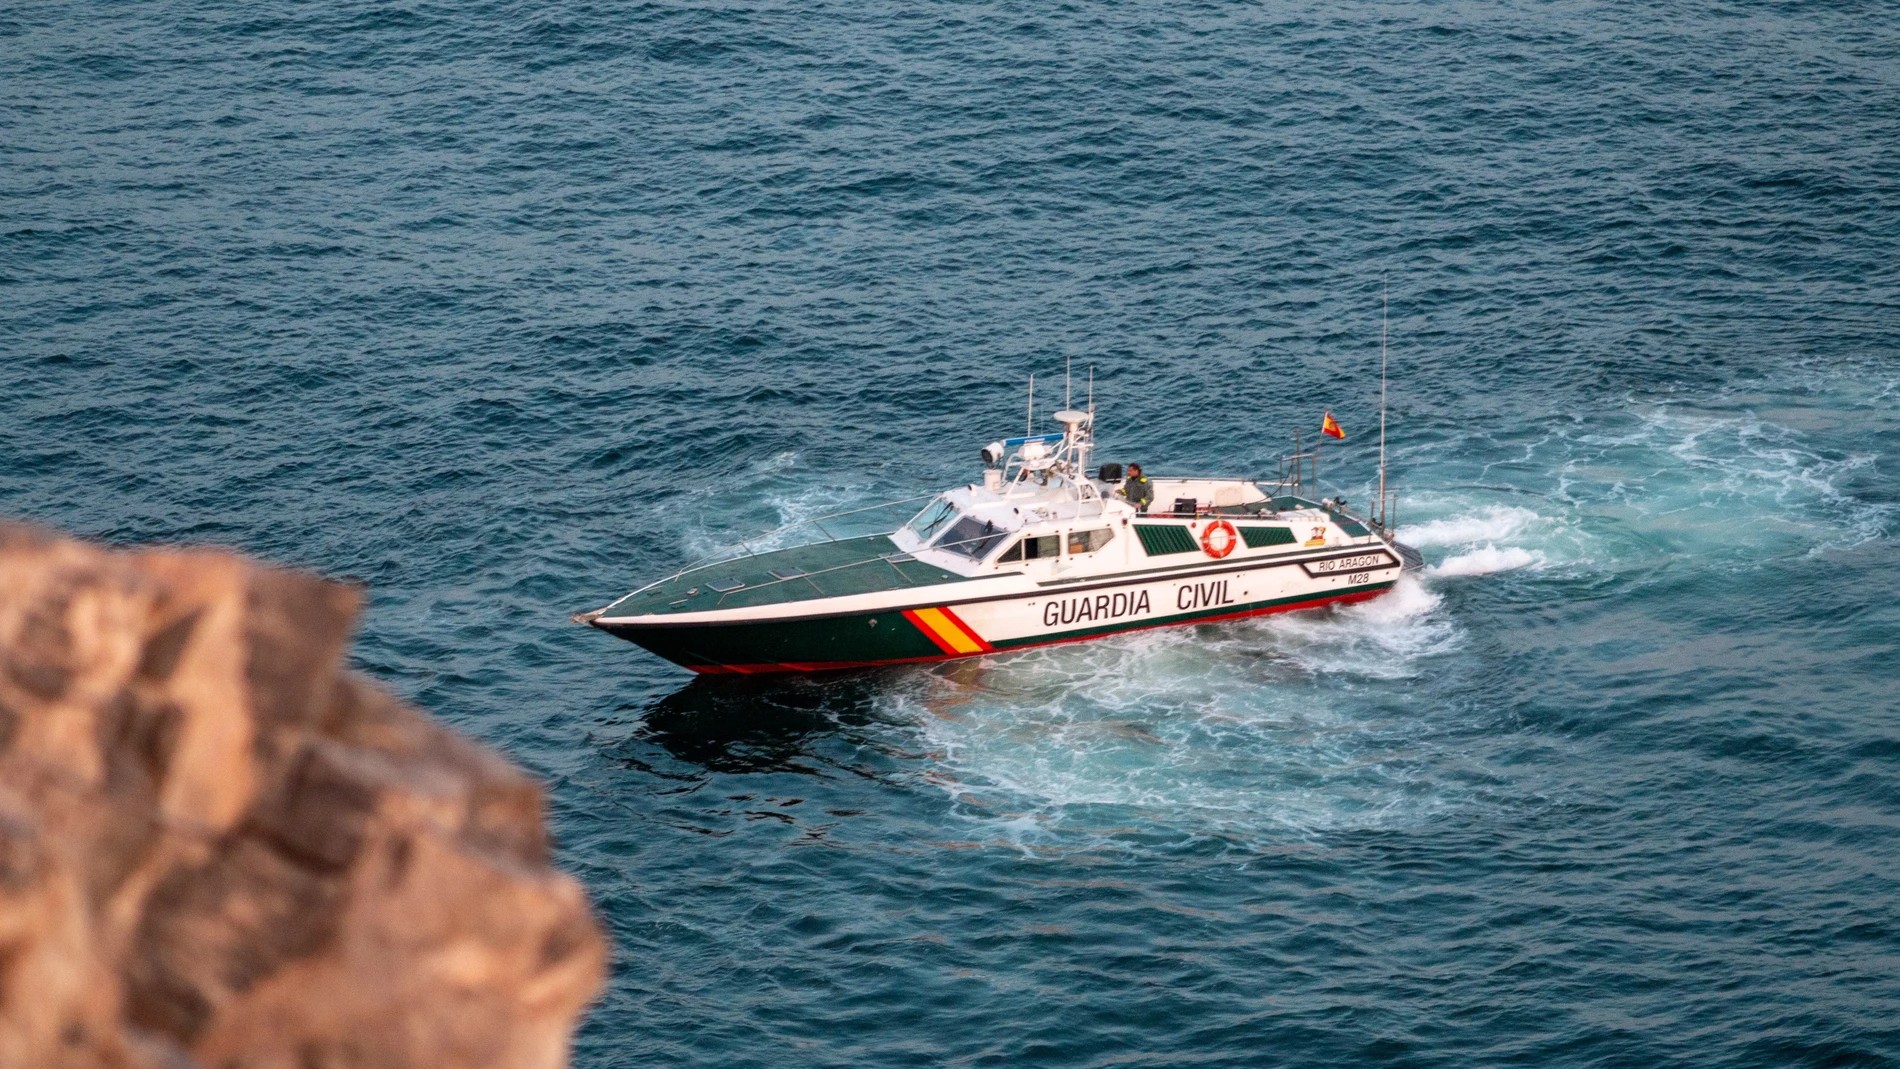 Imagen de la operación en la que la Guardia Civil investiga la procedencia de unos 1.500 kilos de hachís localizados en fardos de unos treinta kilos que han aparecido flotando en diferentes puntos de la Costa de Granada.EFE/Alba Feixas